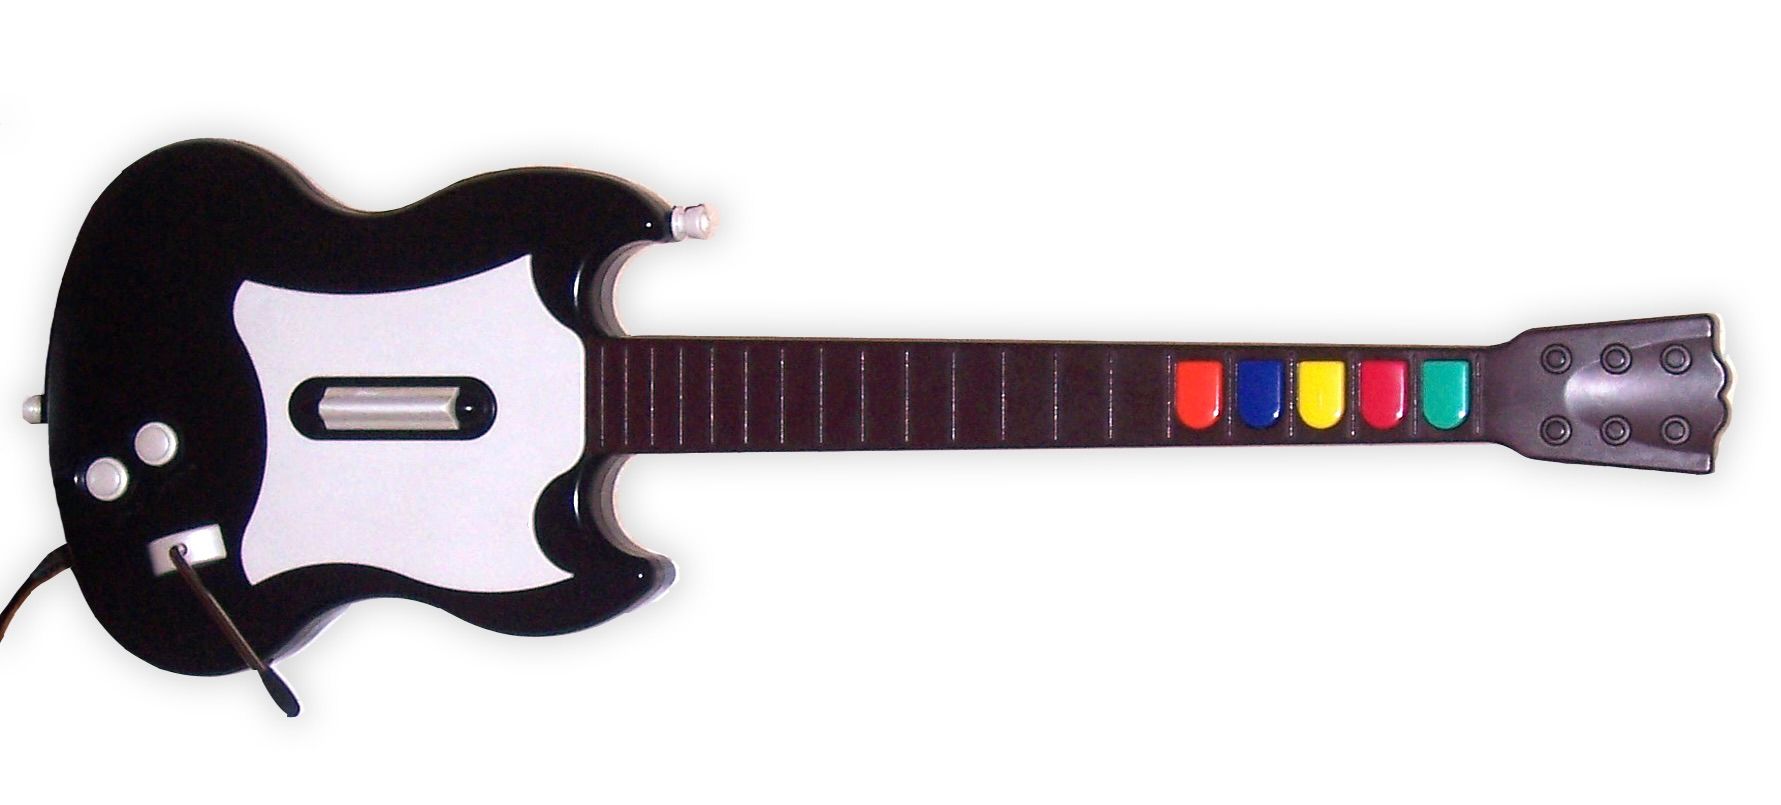 Foto controller guira berbentuk Gibson SG untuk game Guitar Hero